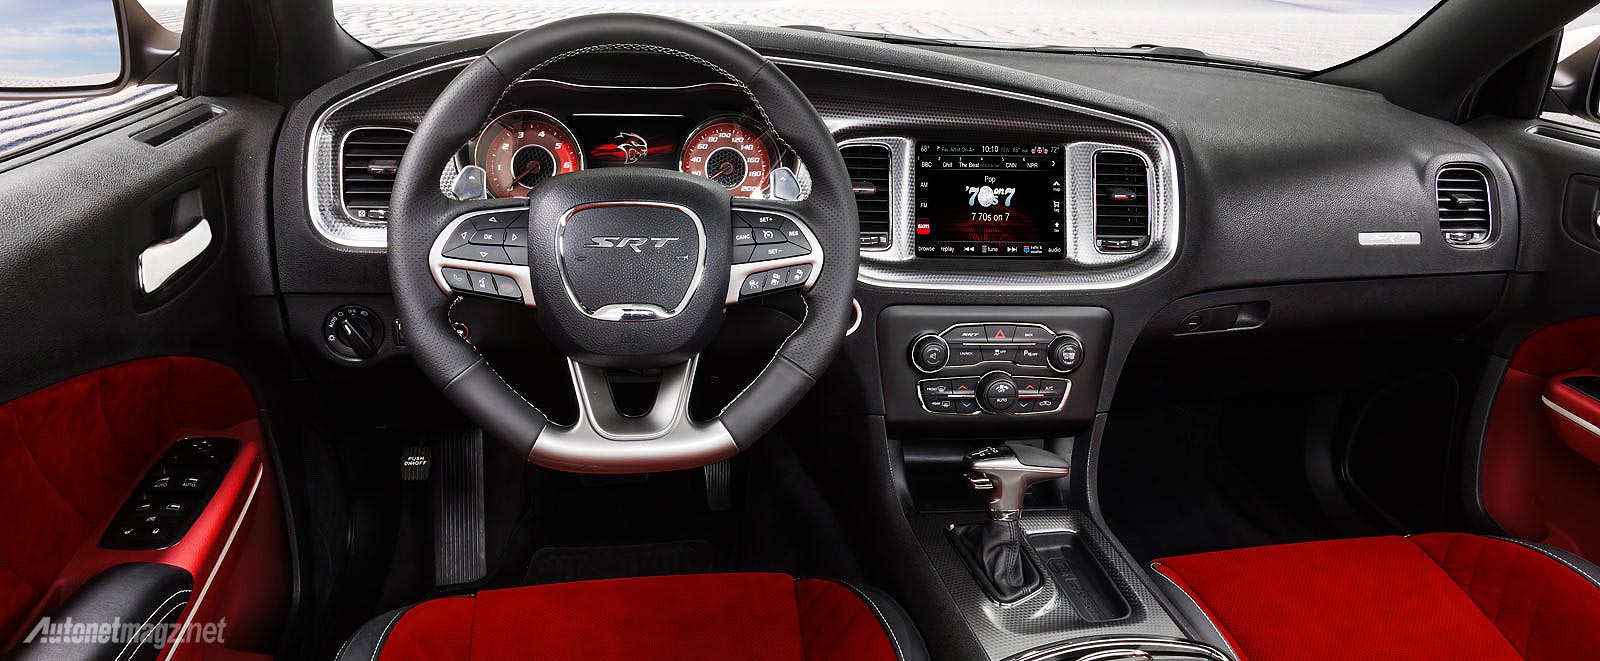 Dodge, Interior Dodge Charger SRT Hellcat: Melihat Lebih Dekat Sedan 4 Pintu Tercepat di Dunia, Dodge Charger SRT Hellcat 2015